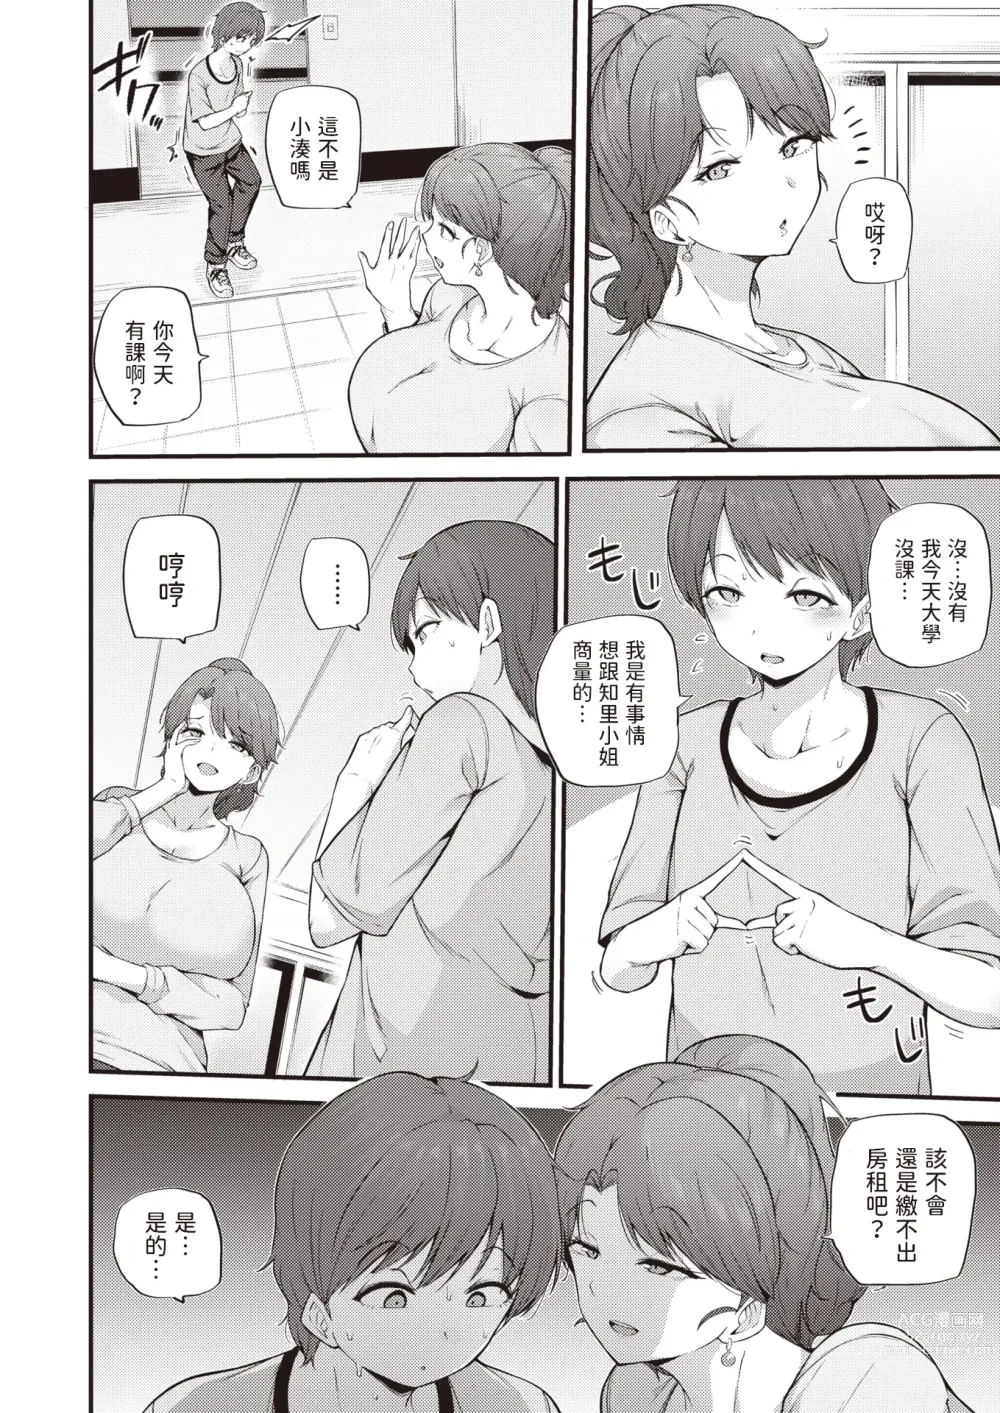 Page 4 of manga Himegoto